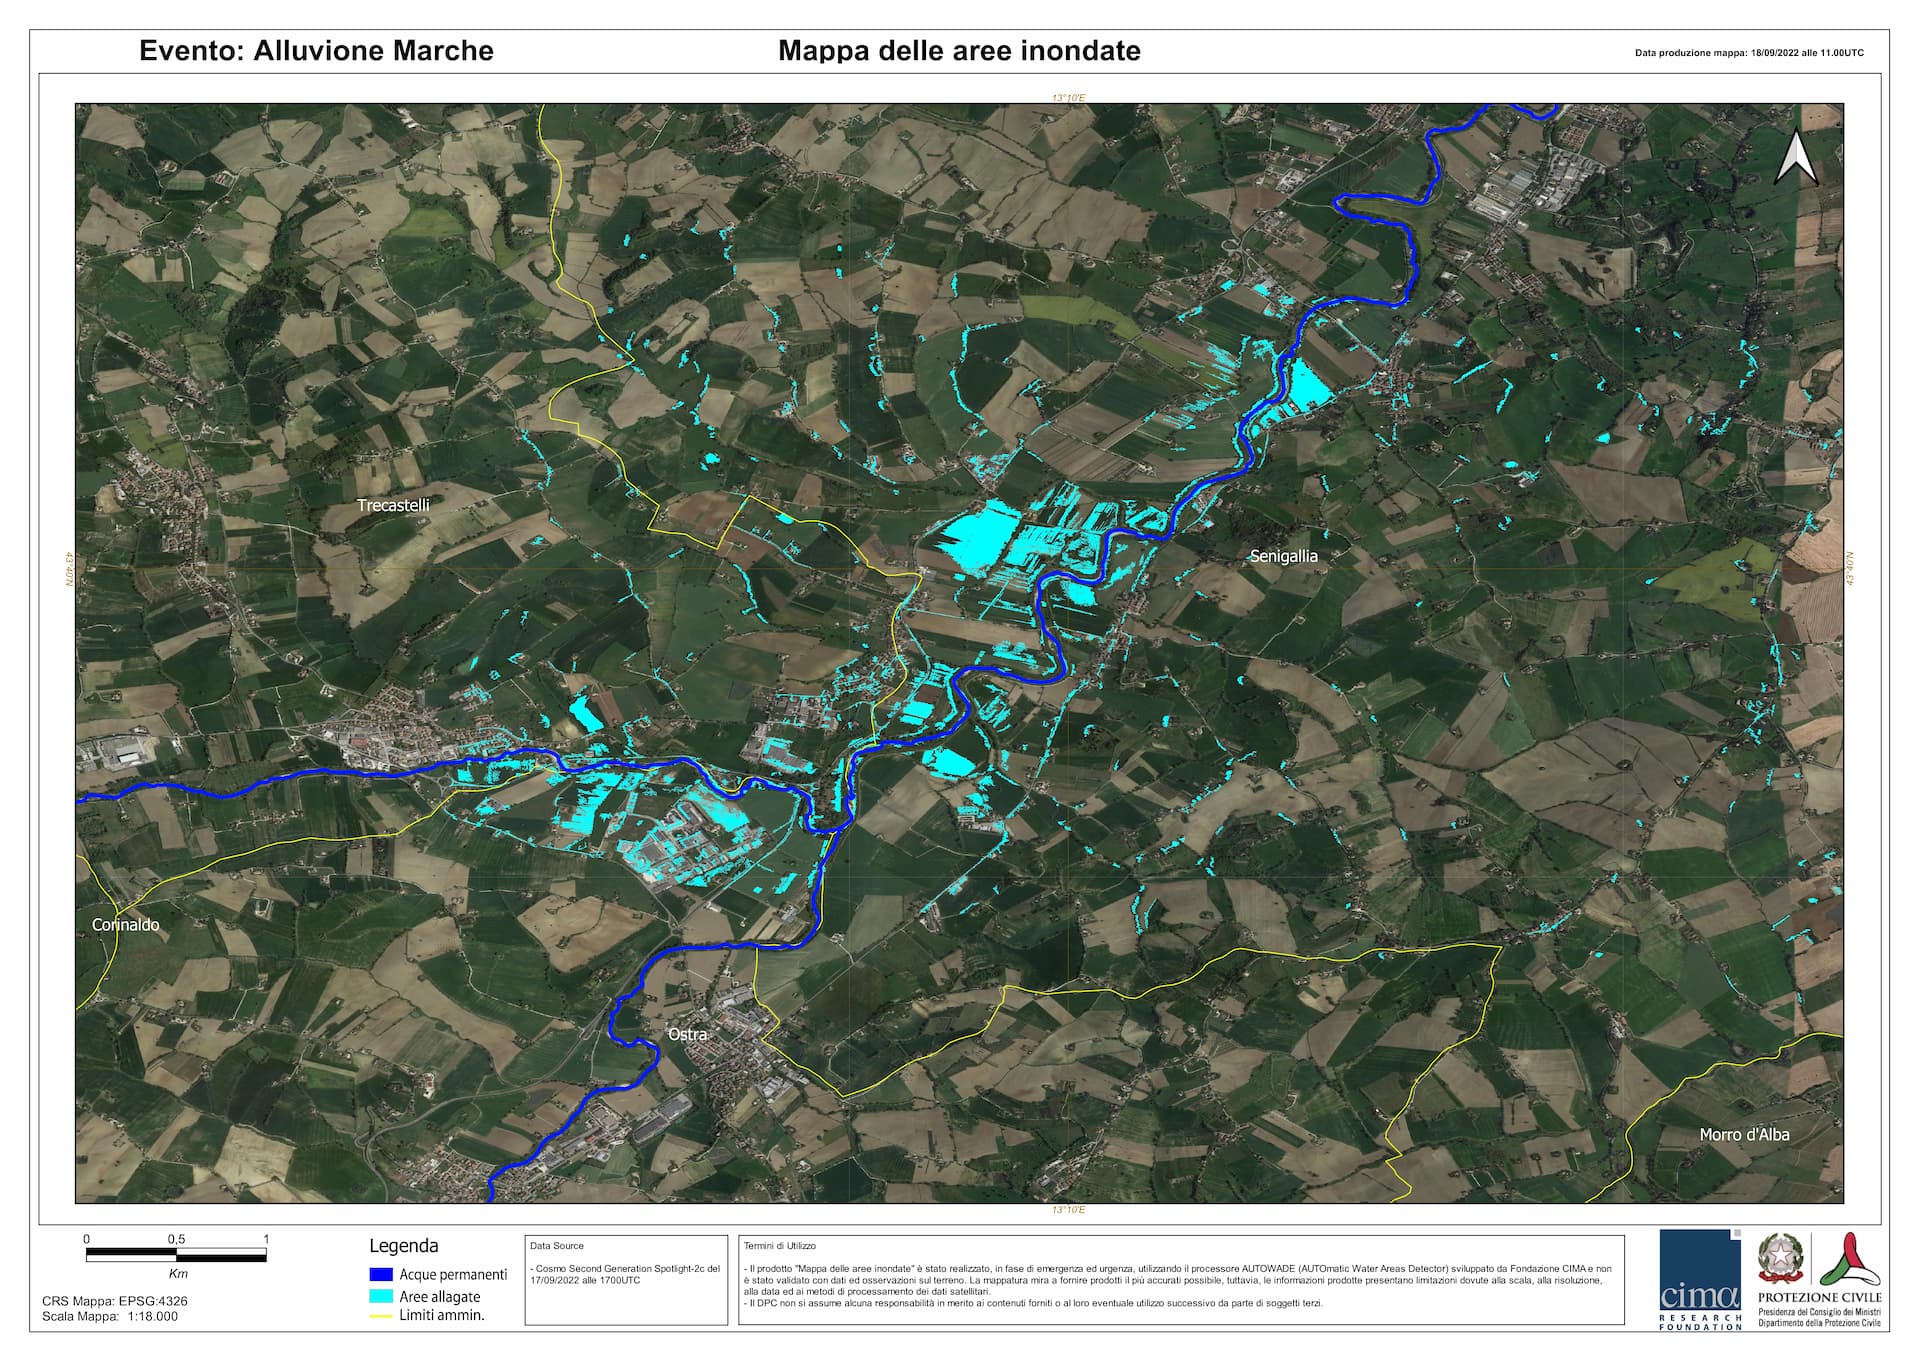 ASI - Alluvione Marche: l’importanza dei dati satellitari